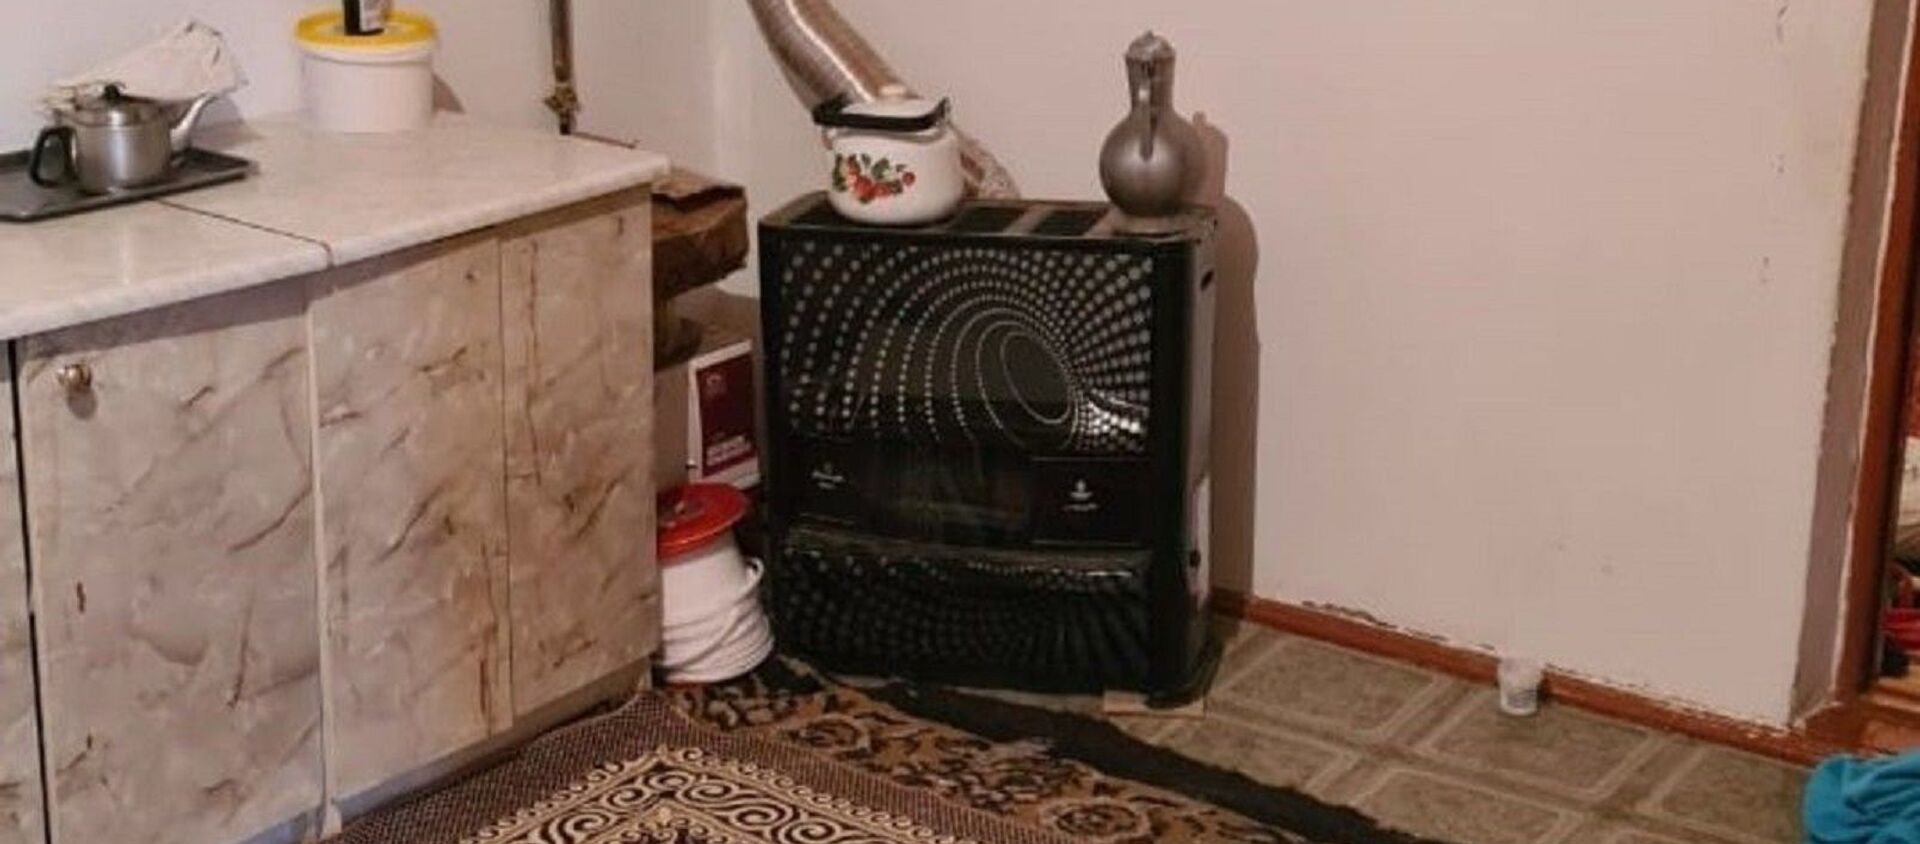 Газовое отопление в доме в Туркестане, где погибли пять человек - Sputnik Қазақстан, 1920, 02.03.2021